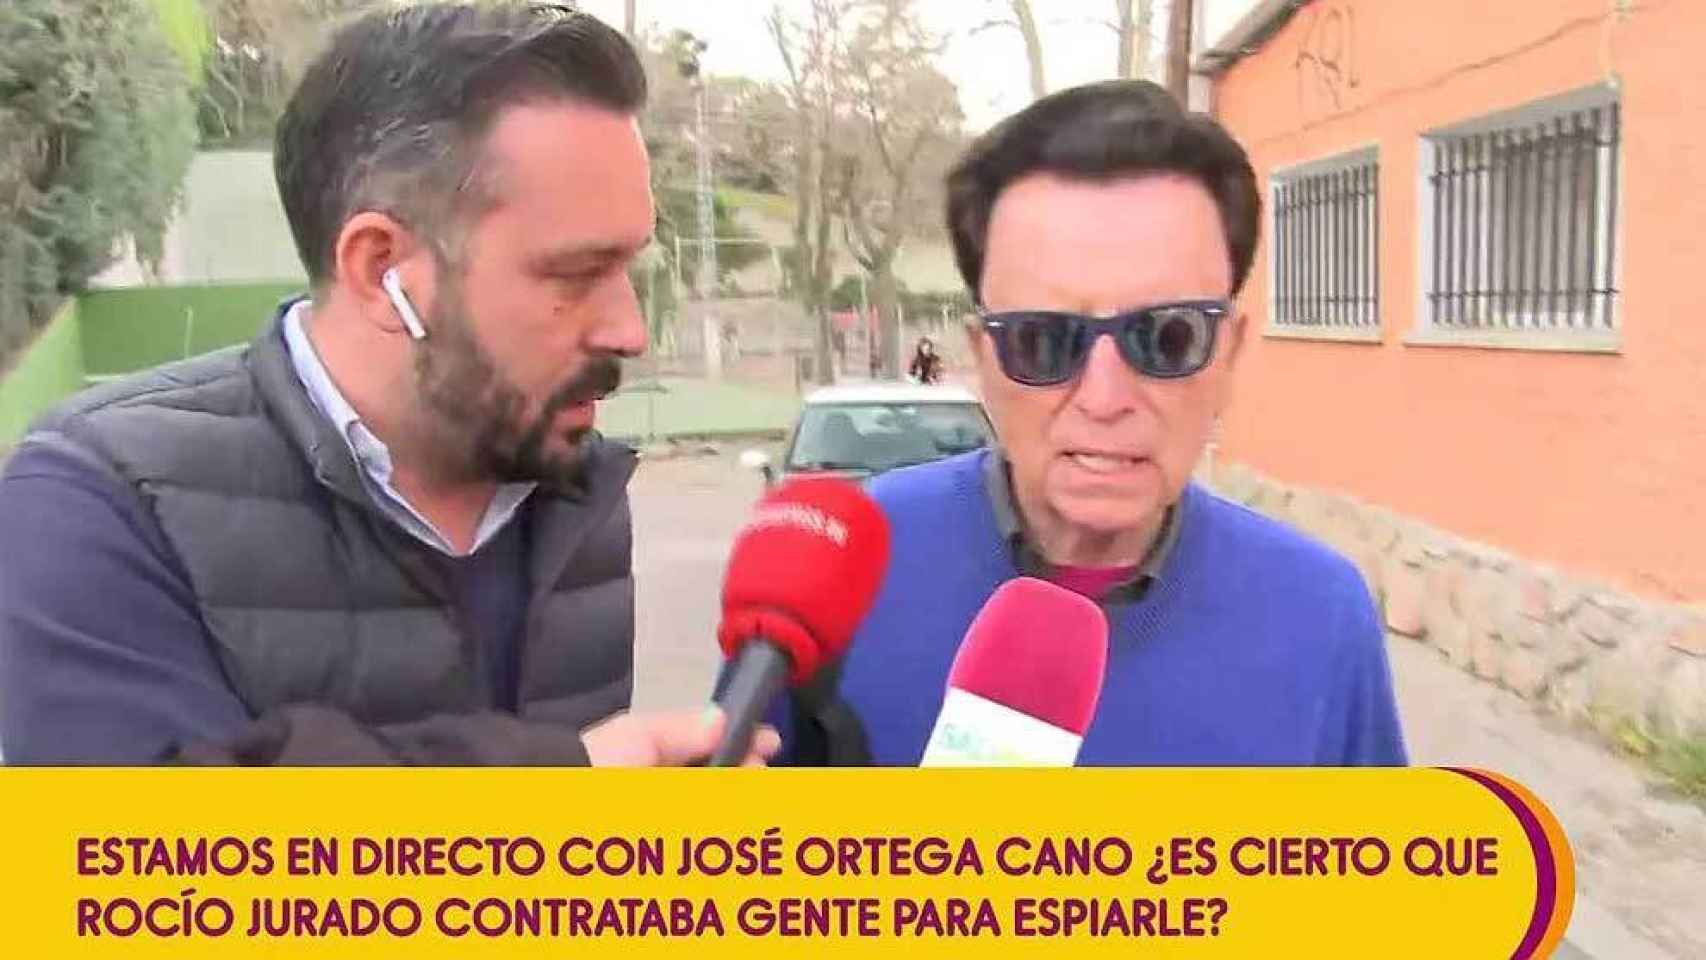 Ortega Cano, enfadado con Telecinco: “Se me da un trato que no merezco”